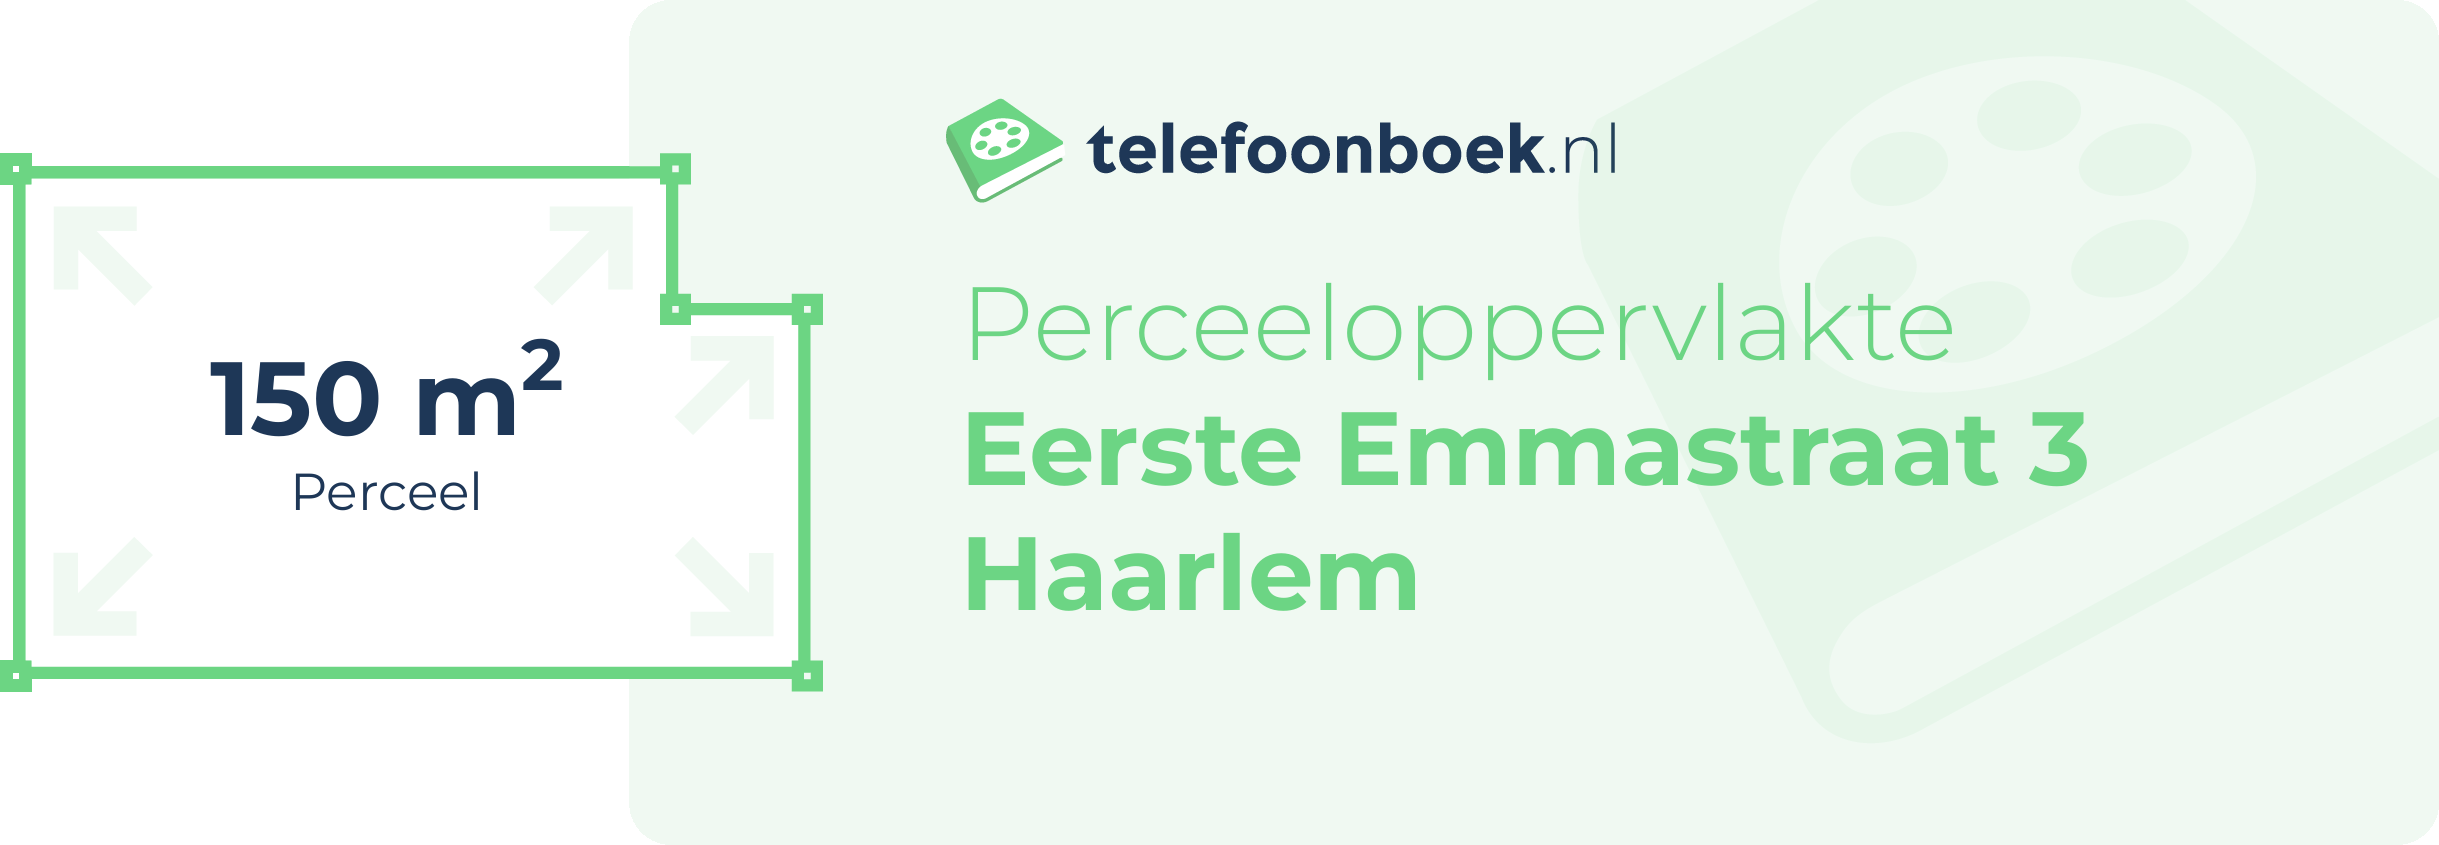 Perceeloppervlakte Eerste Emmastraat 3 Haarlem